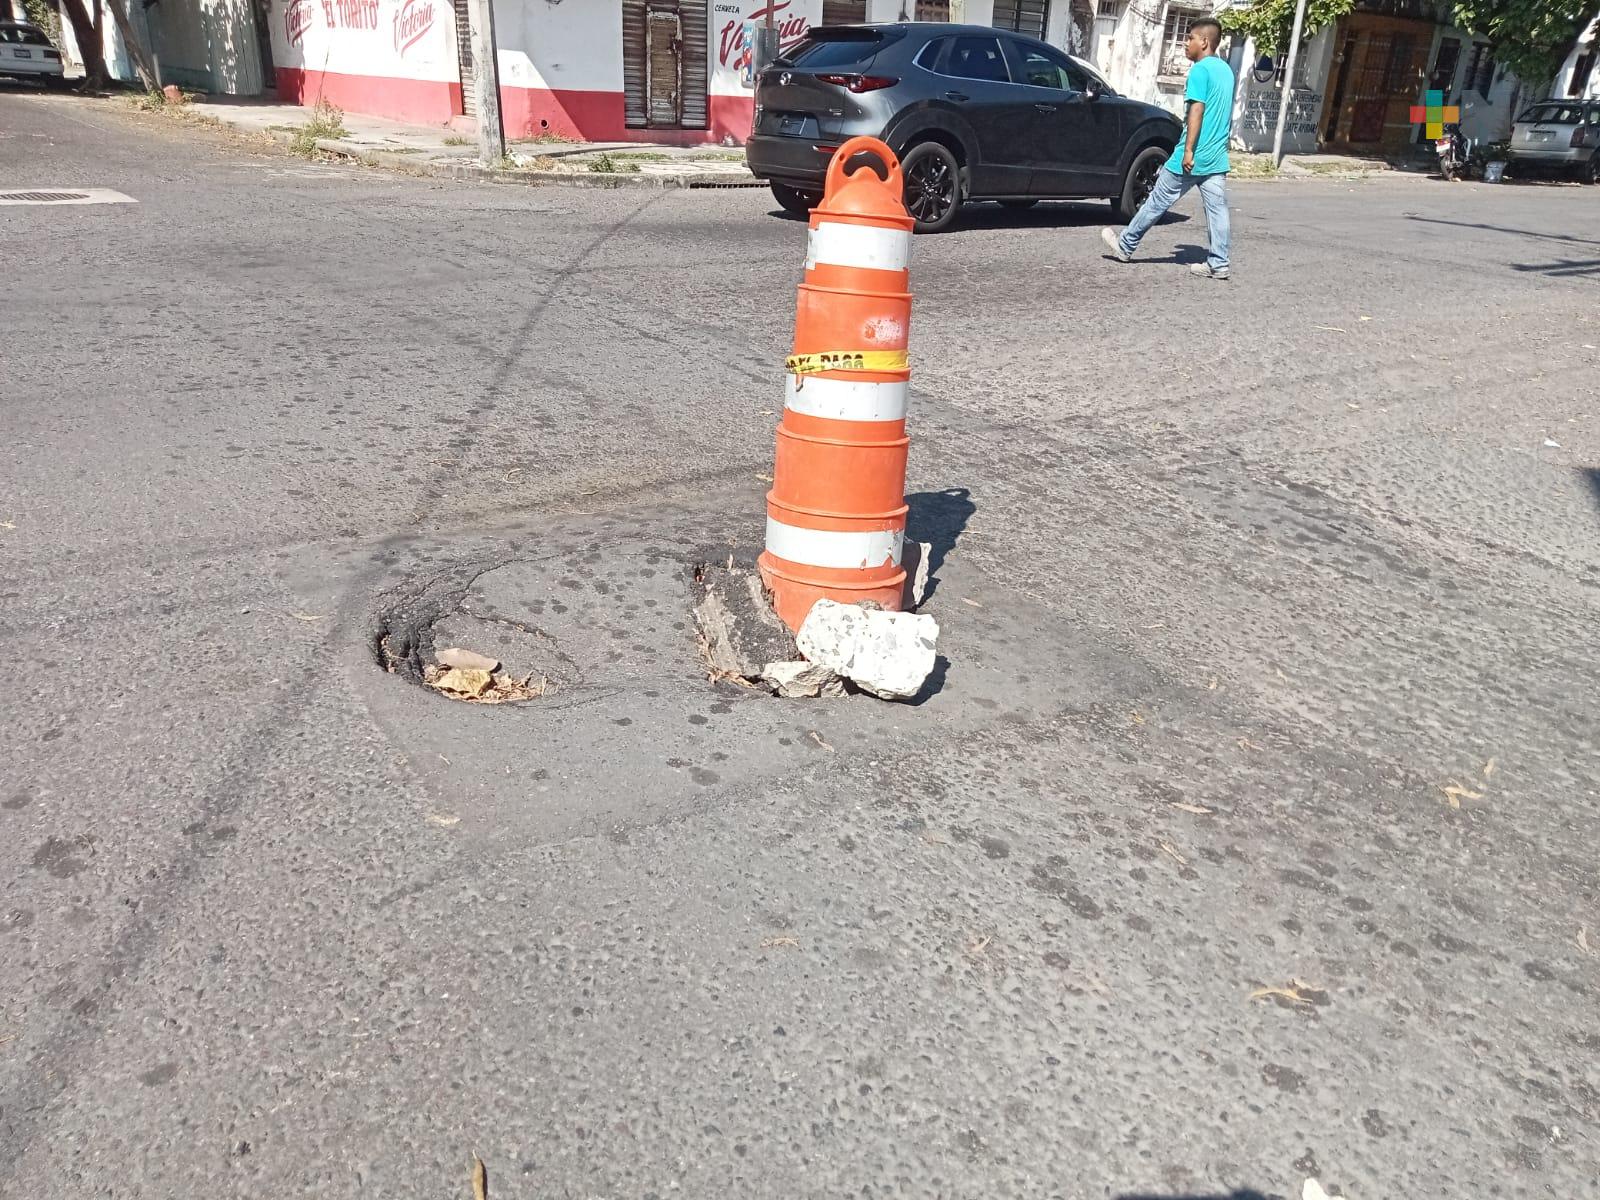 Aparece otro socavón en Veracruz puerto, quejas por falta de mantenimiento a calles